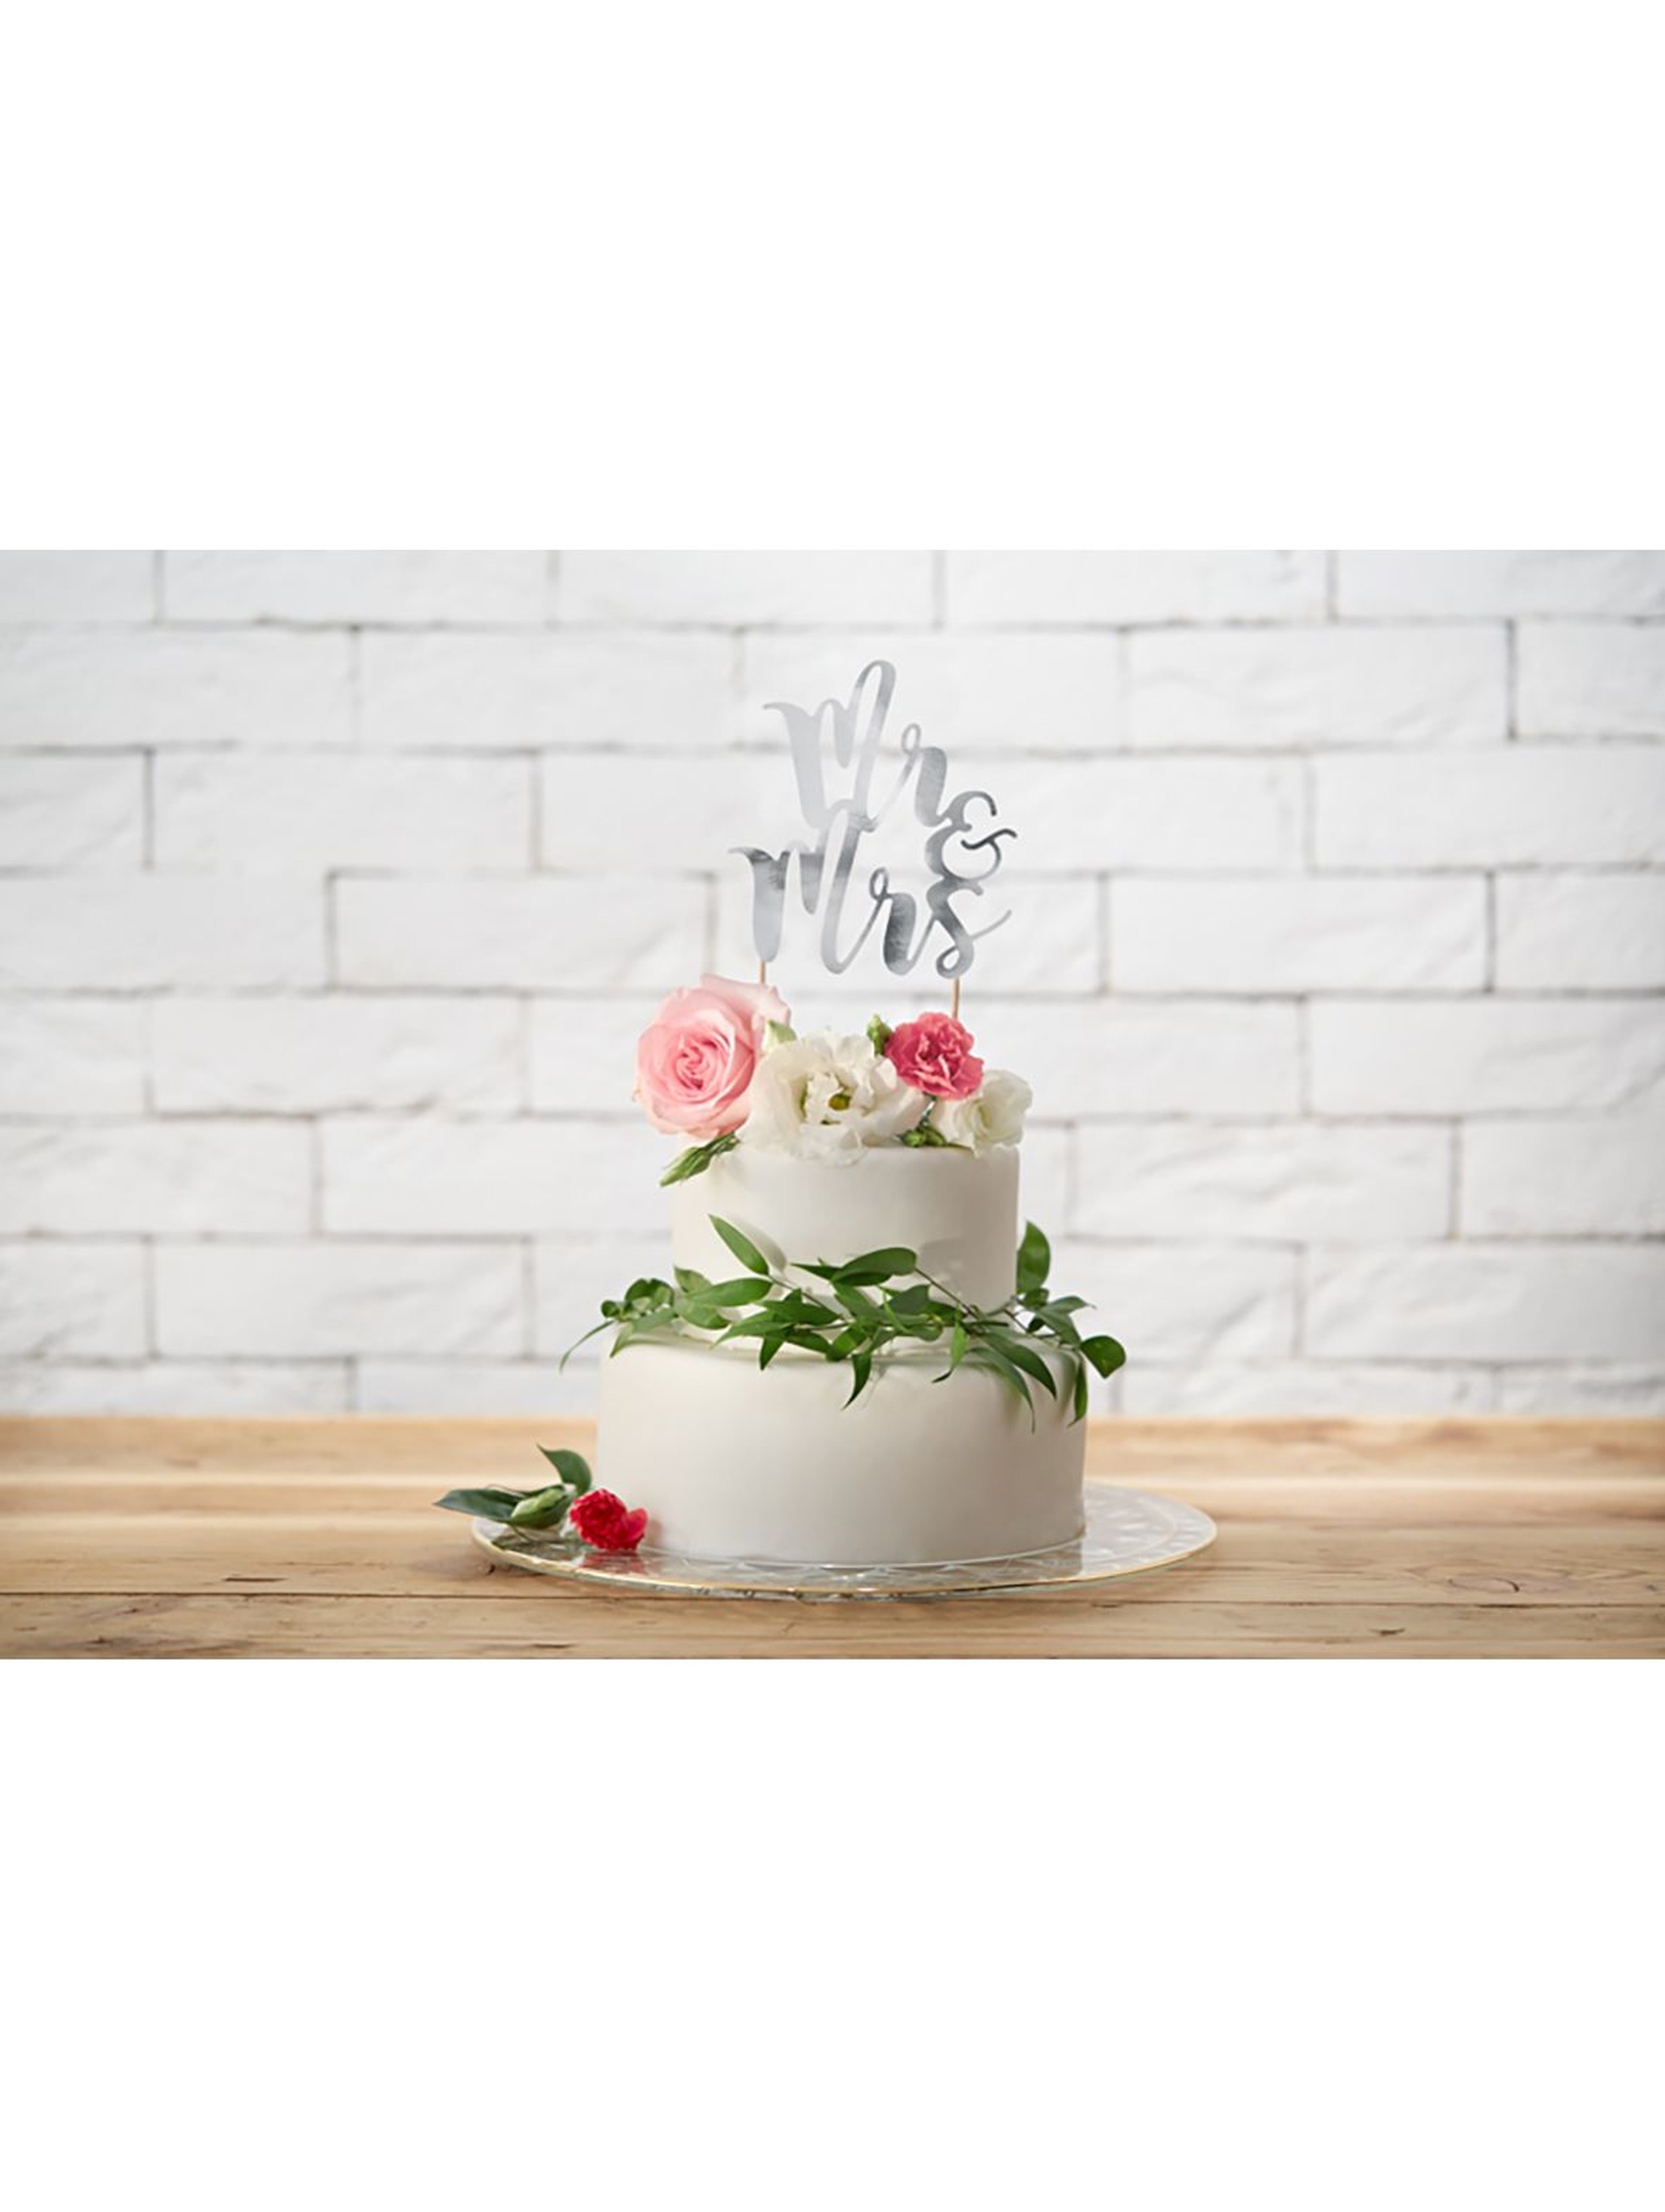 Topper na tort "Mr&Mrs" wykonany z papieru lustrzanego